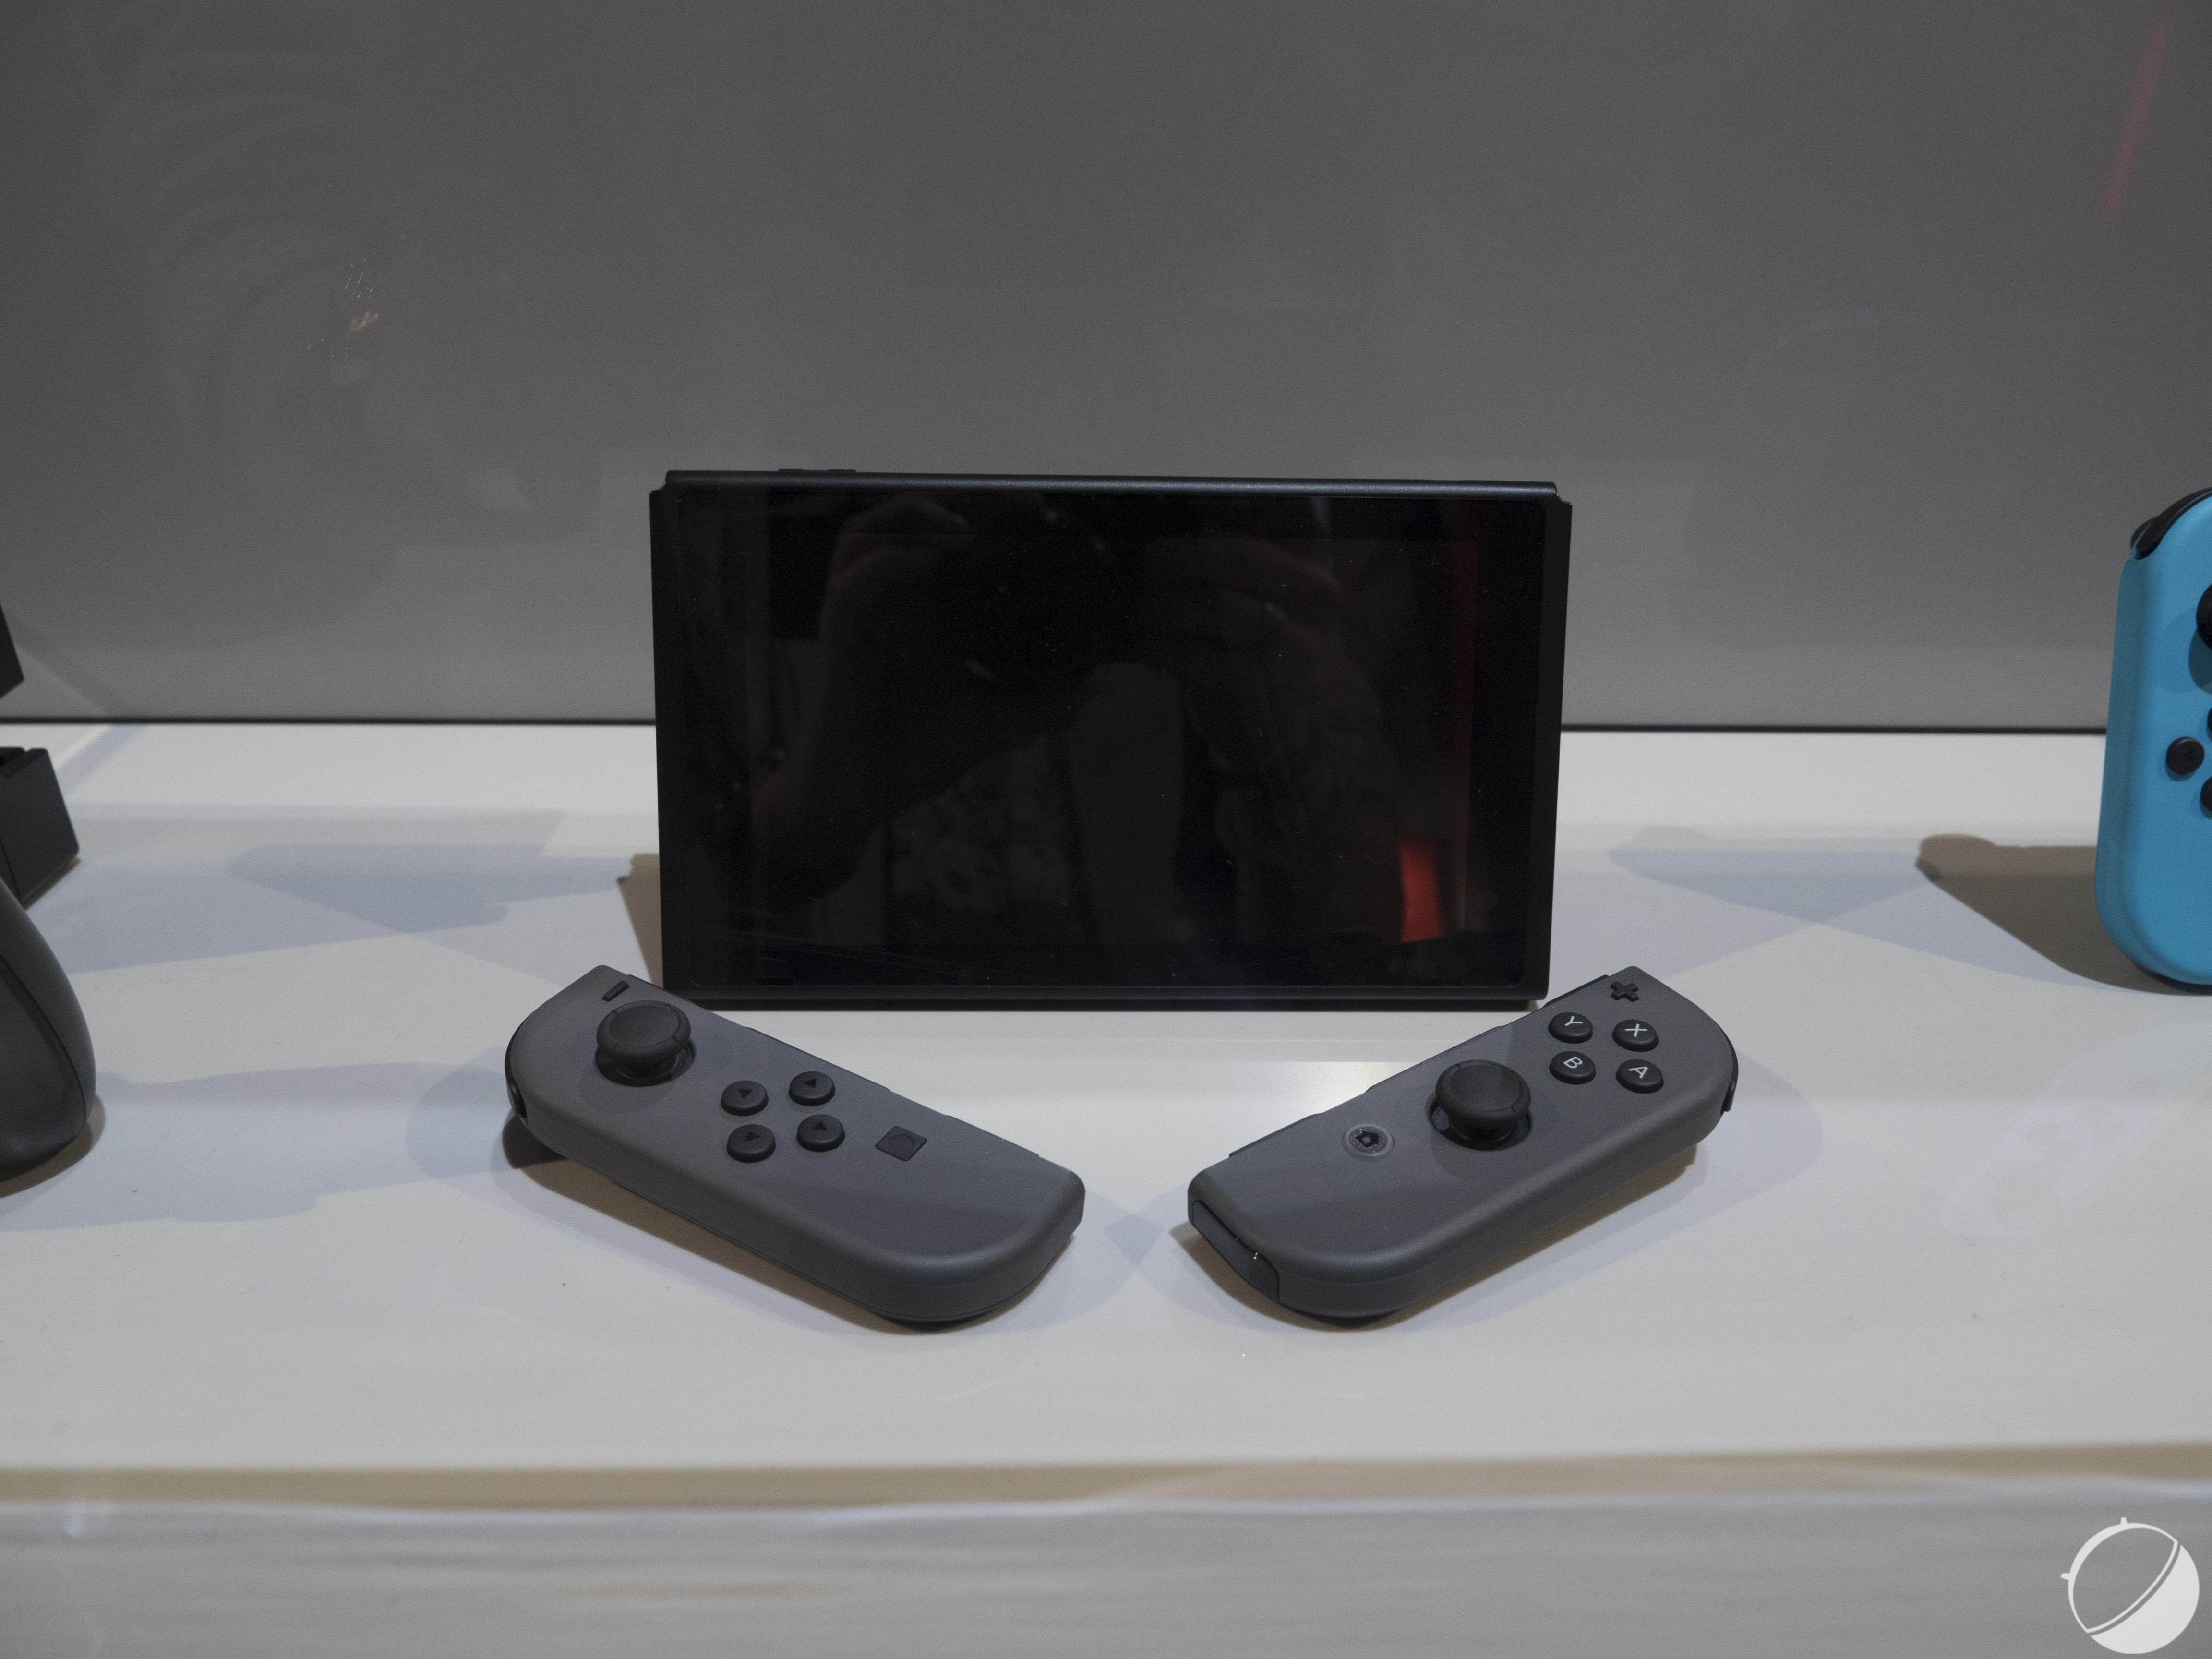 Nintendo Switch : une manette pro équipée d'une prise jack annoncée